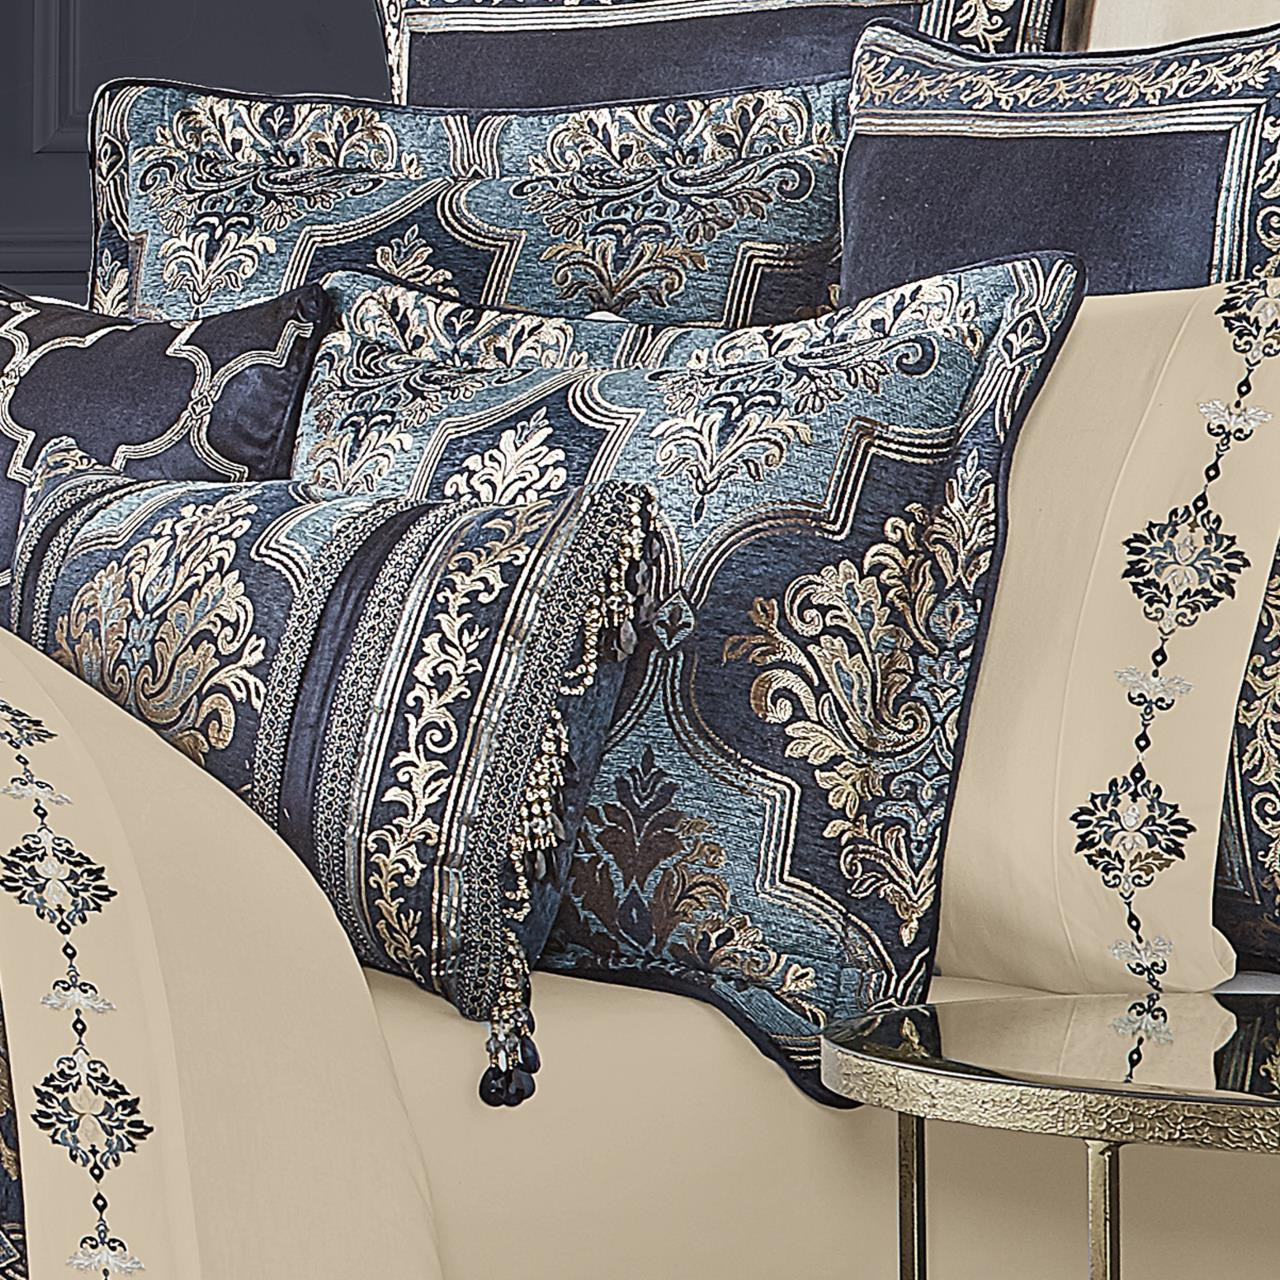 Middlebury Indigo Comforter Collection -